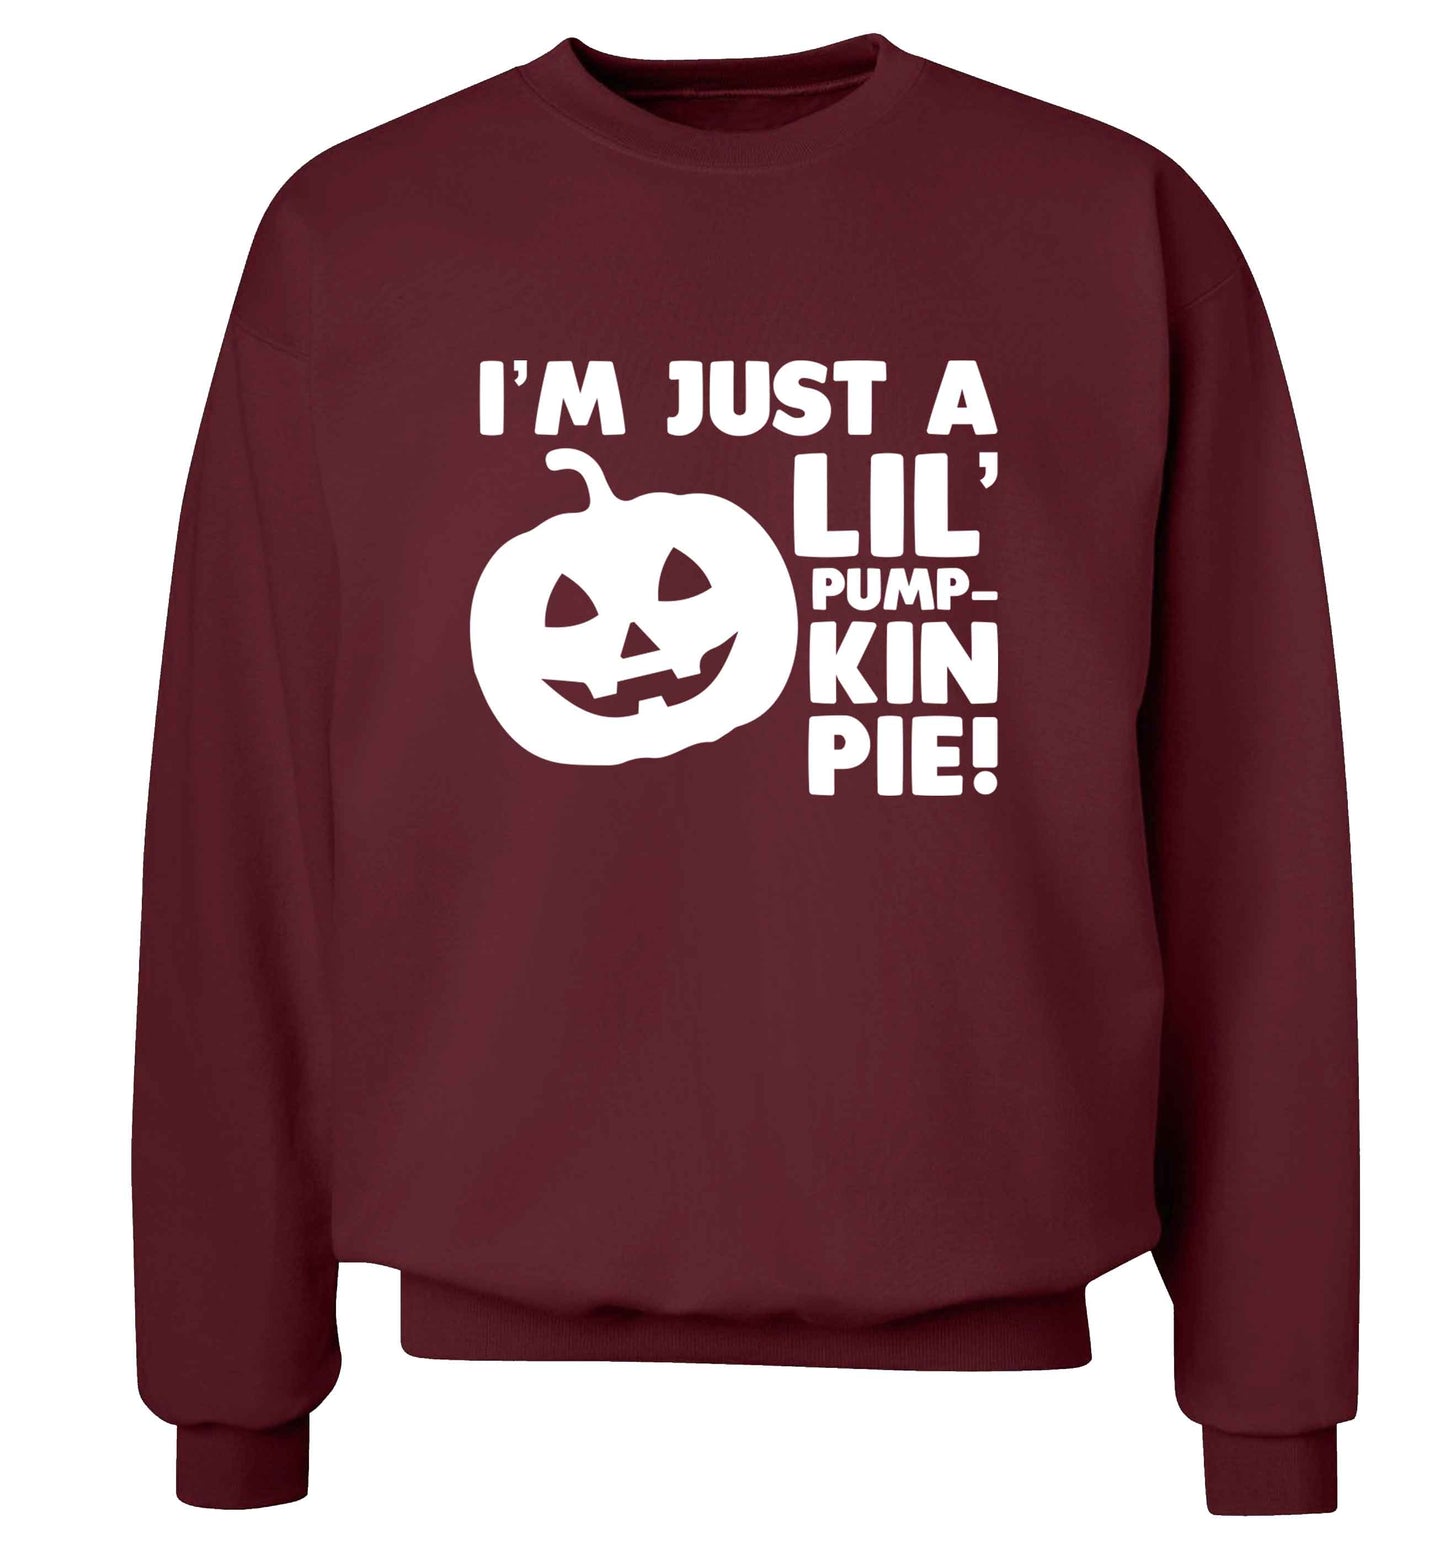 I'm just a lil' pumpkin pie adult's unisex maroon sweater 2XL